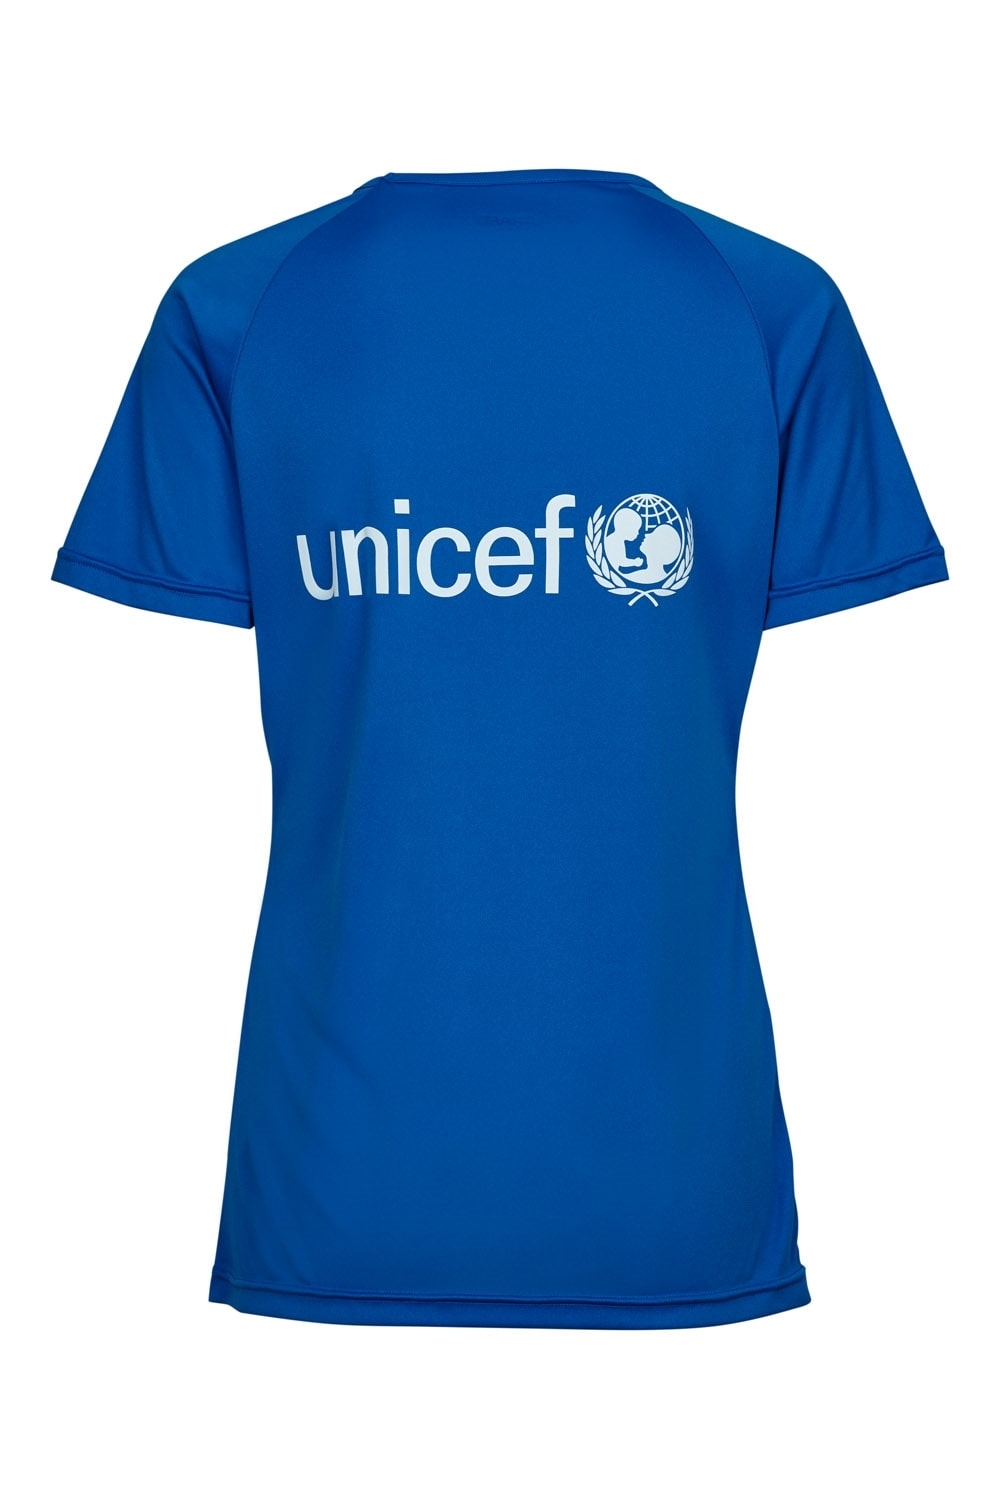 erosion Eddike Brandmand Køb UNICEF løbetrøje til dame i 3 forskellige farver | UNICEF Danmark